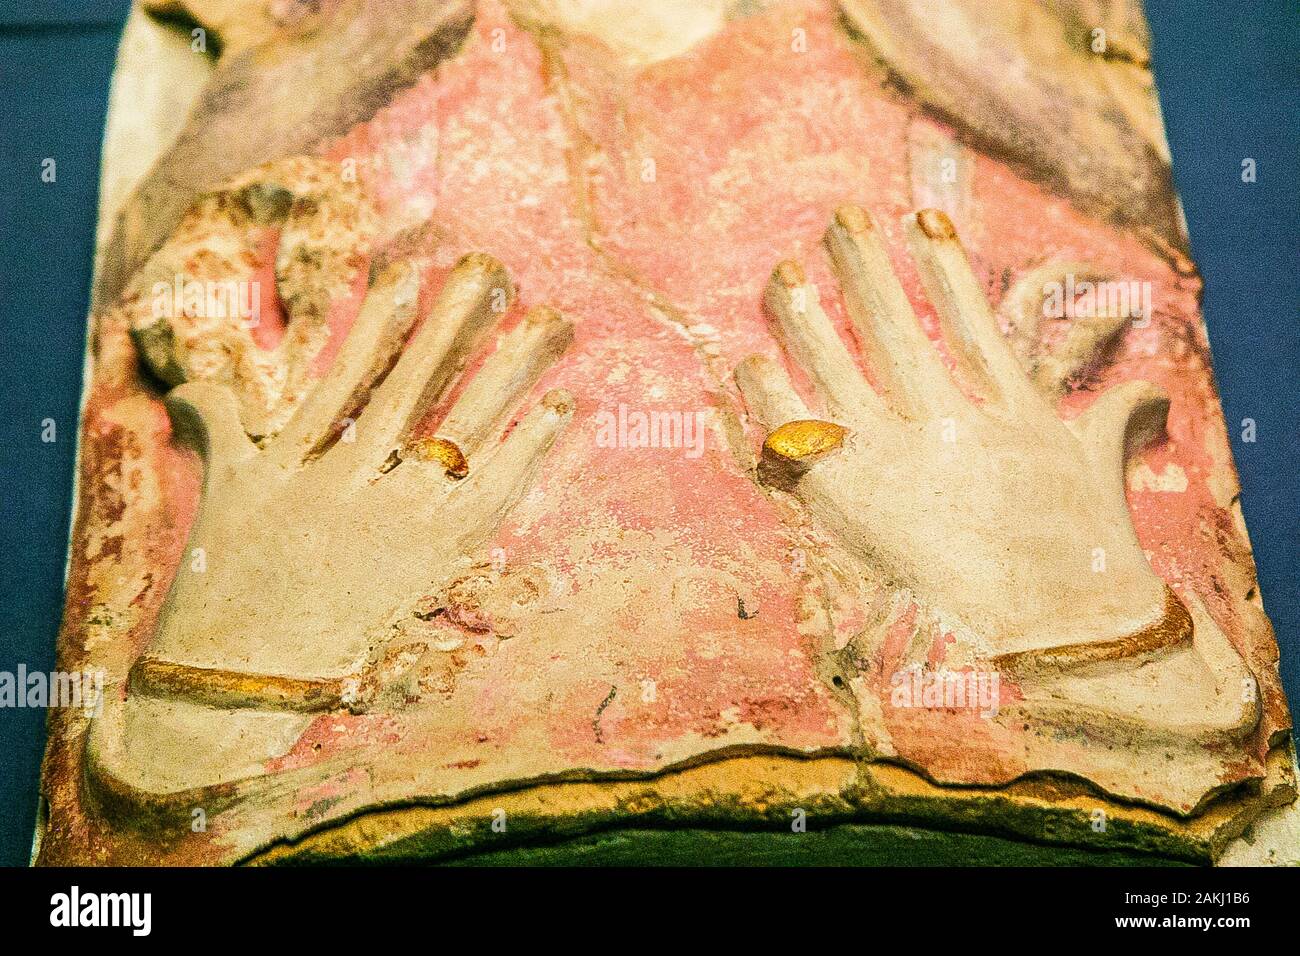 Egypte, Alexandrie, Bibliotheca Alexandrina, du musée archéologique, de la période tardive cartonnage momie masque d'une femme, se concentrer sur les mains. Banque D'Images